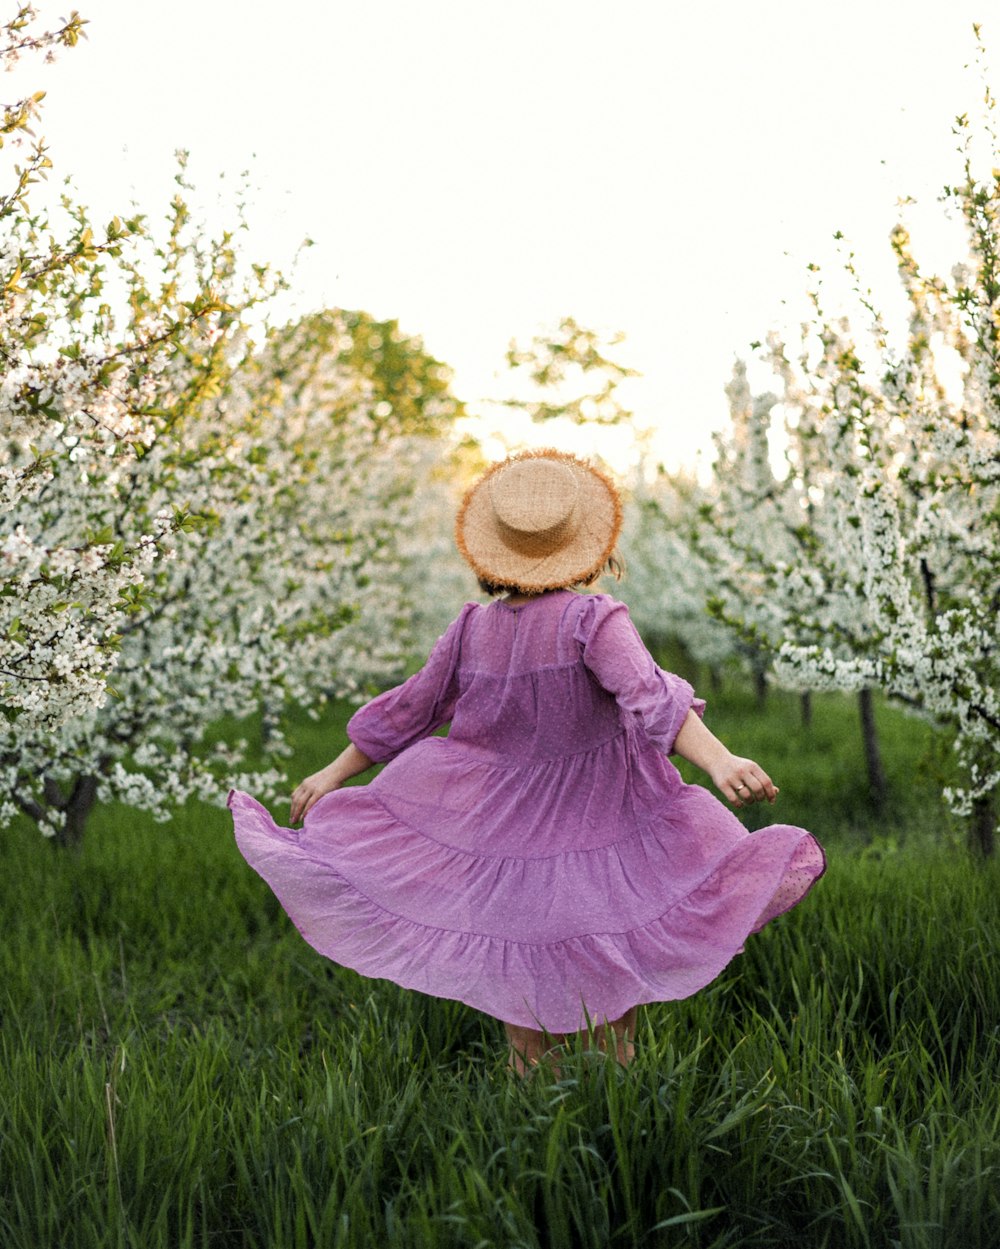 분홍색 드레스와 갈색 태양 모자를 쓴 여자가 낮 동안 푸른 잔디밭에 앉아 있다